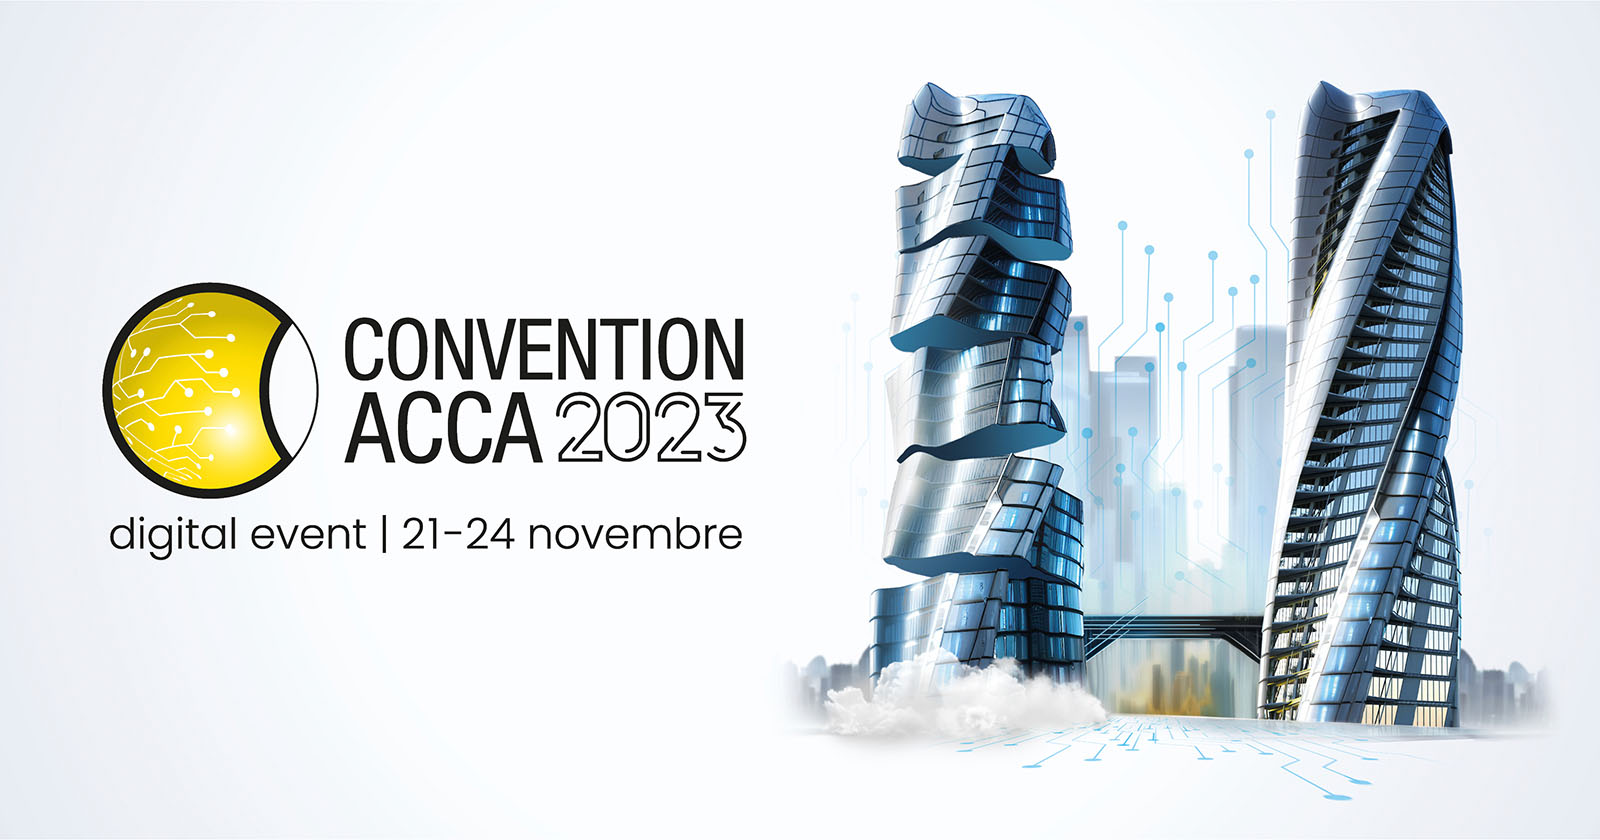 Convention ACCA 2023, l'evento digitale dell'anno per i professionisti AEC